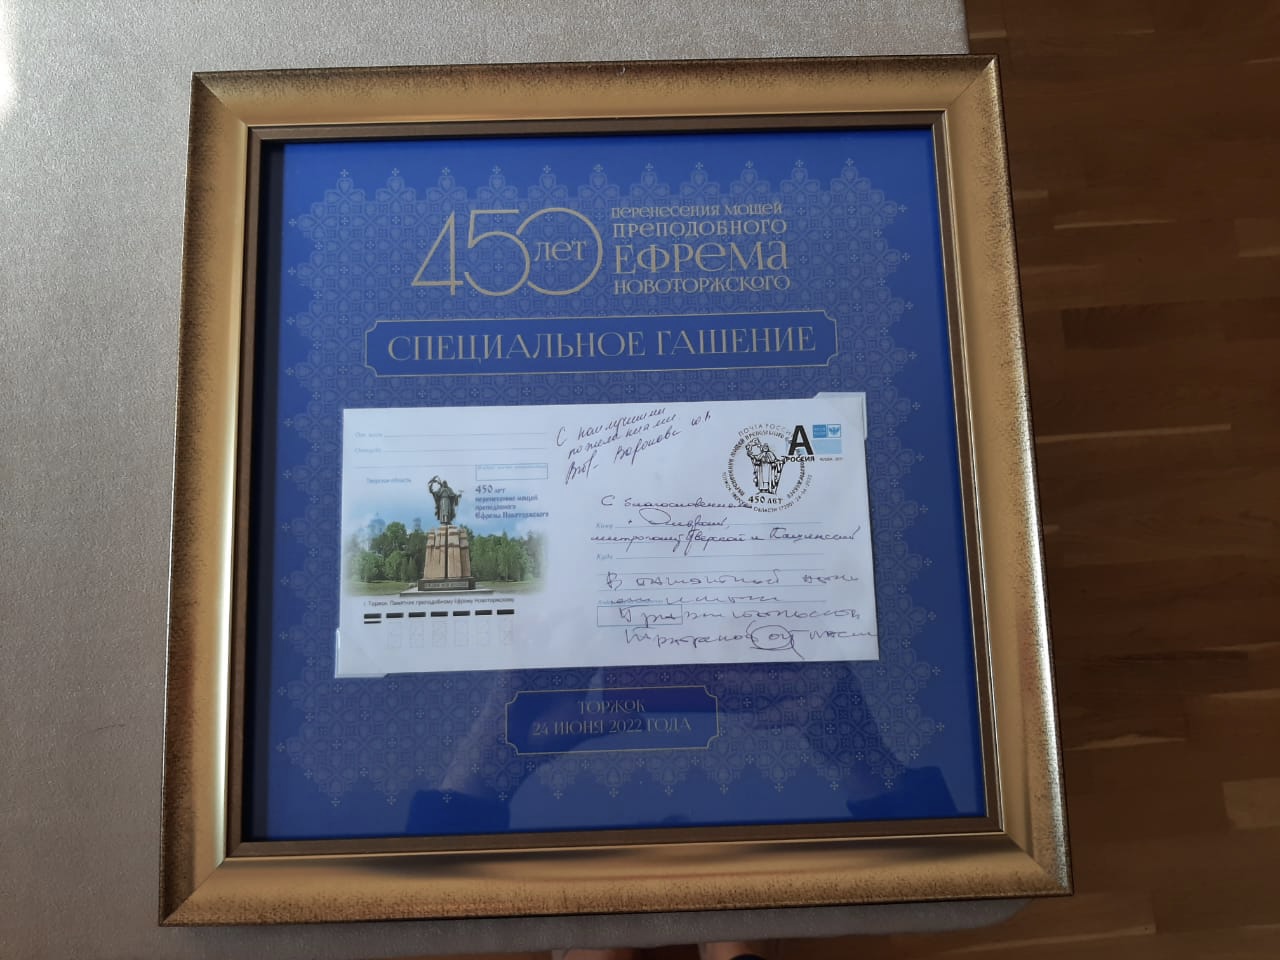 В честь 450-летия перенесения мощей Ефрема Новоторжского Почта России выпустила конверт